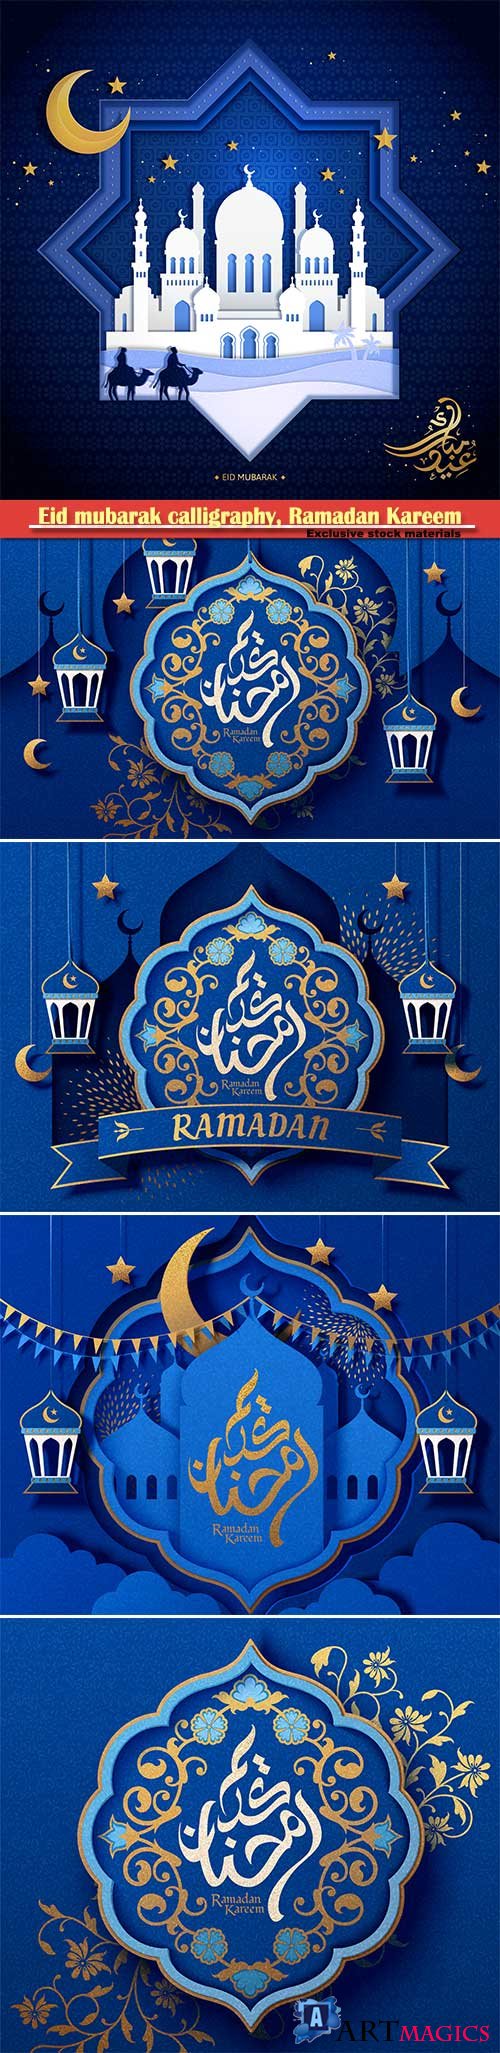 Eid mubarak calligraphy, Ramadan Kareem vector card # 6